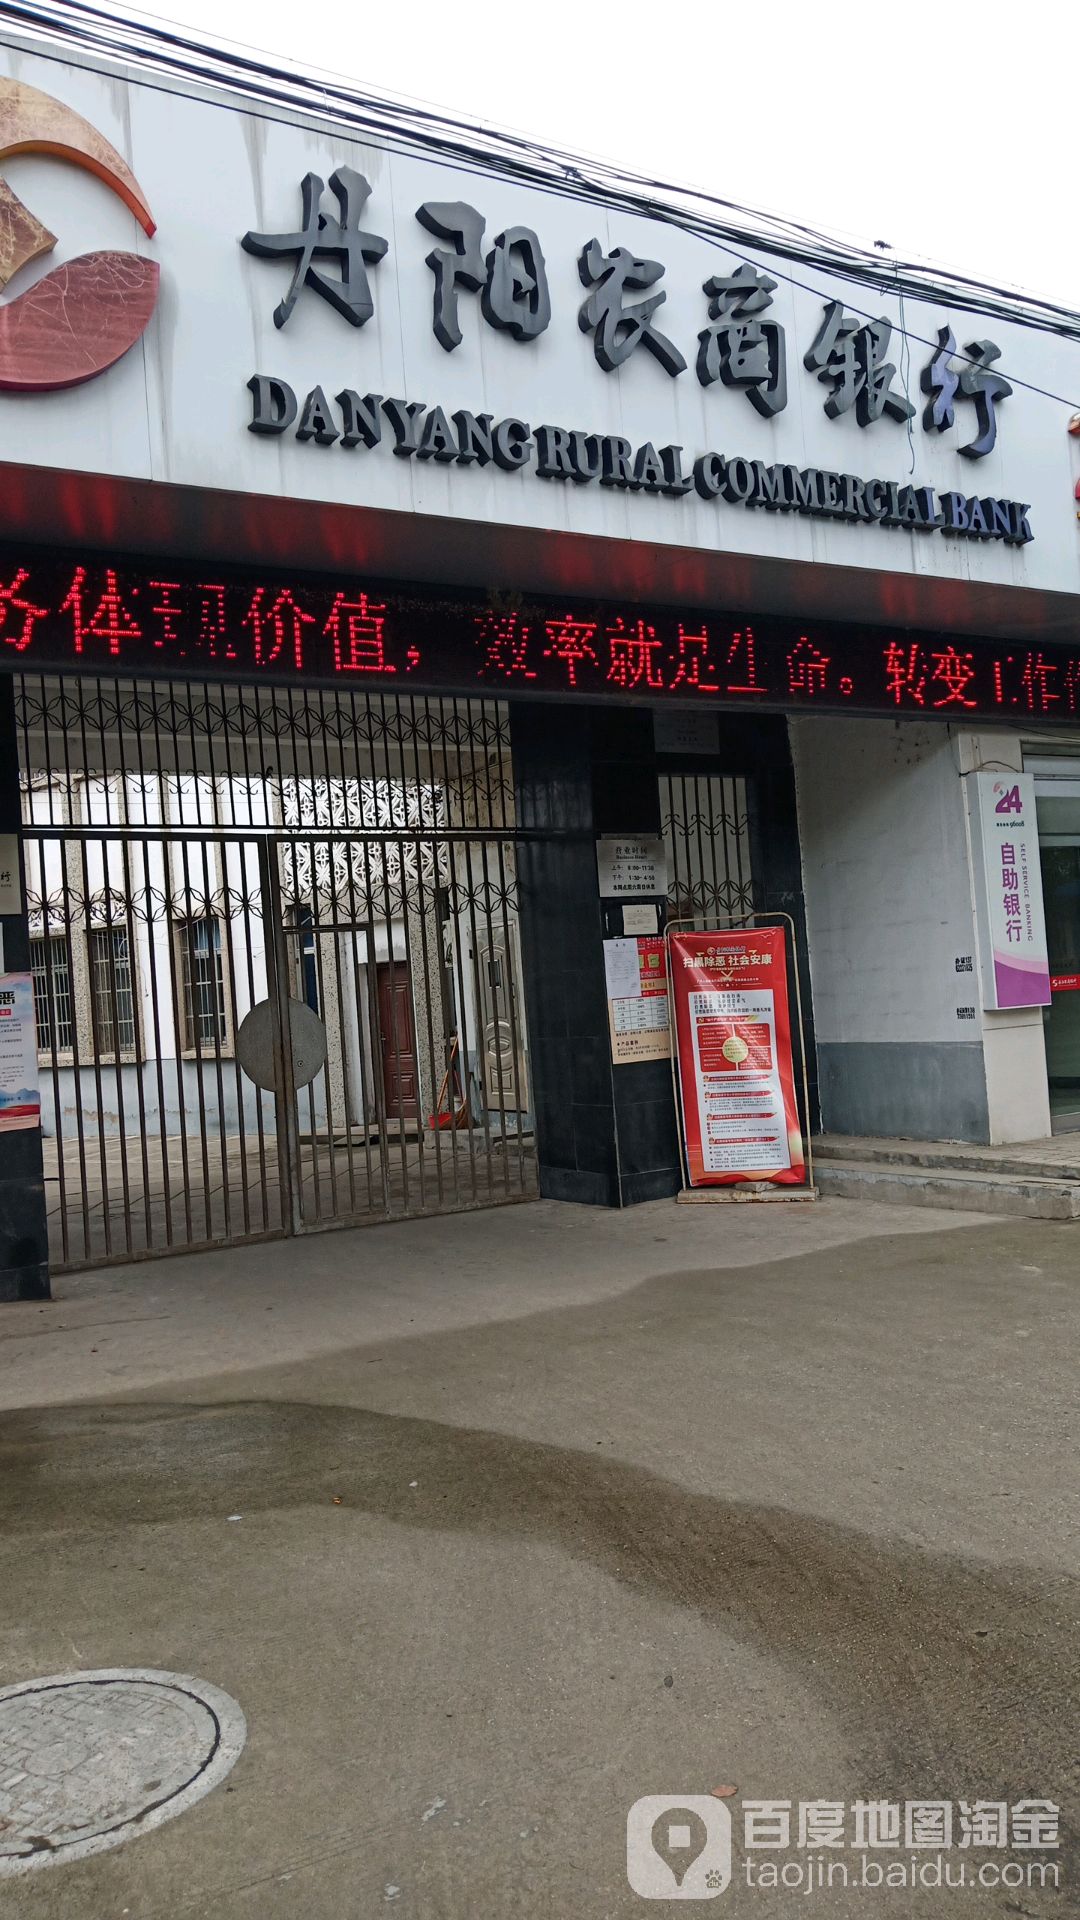 丹陽市農村商業銀行ATM